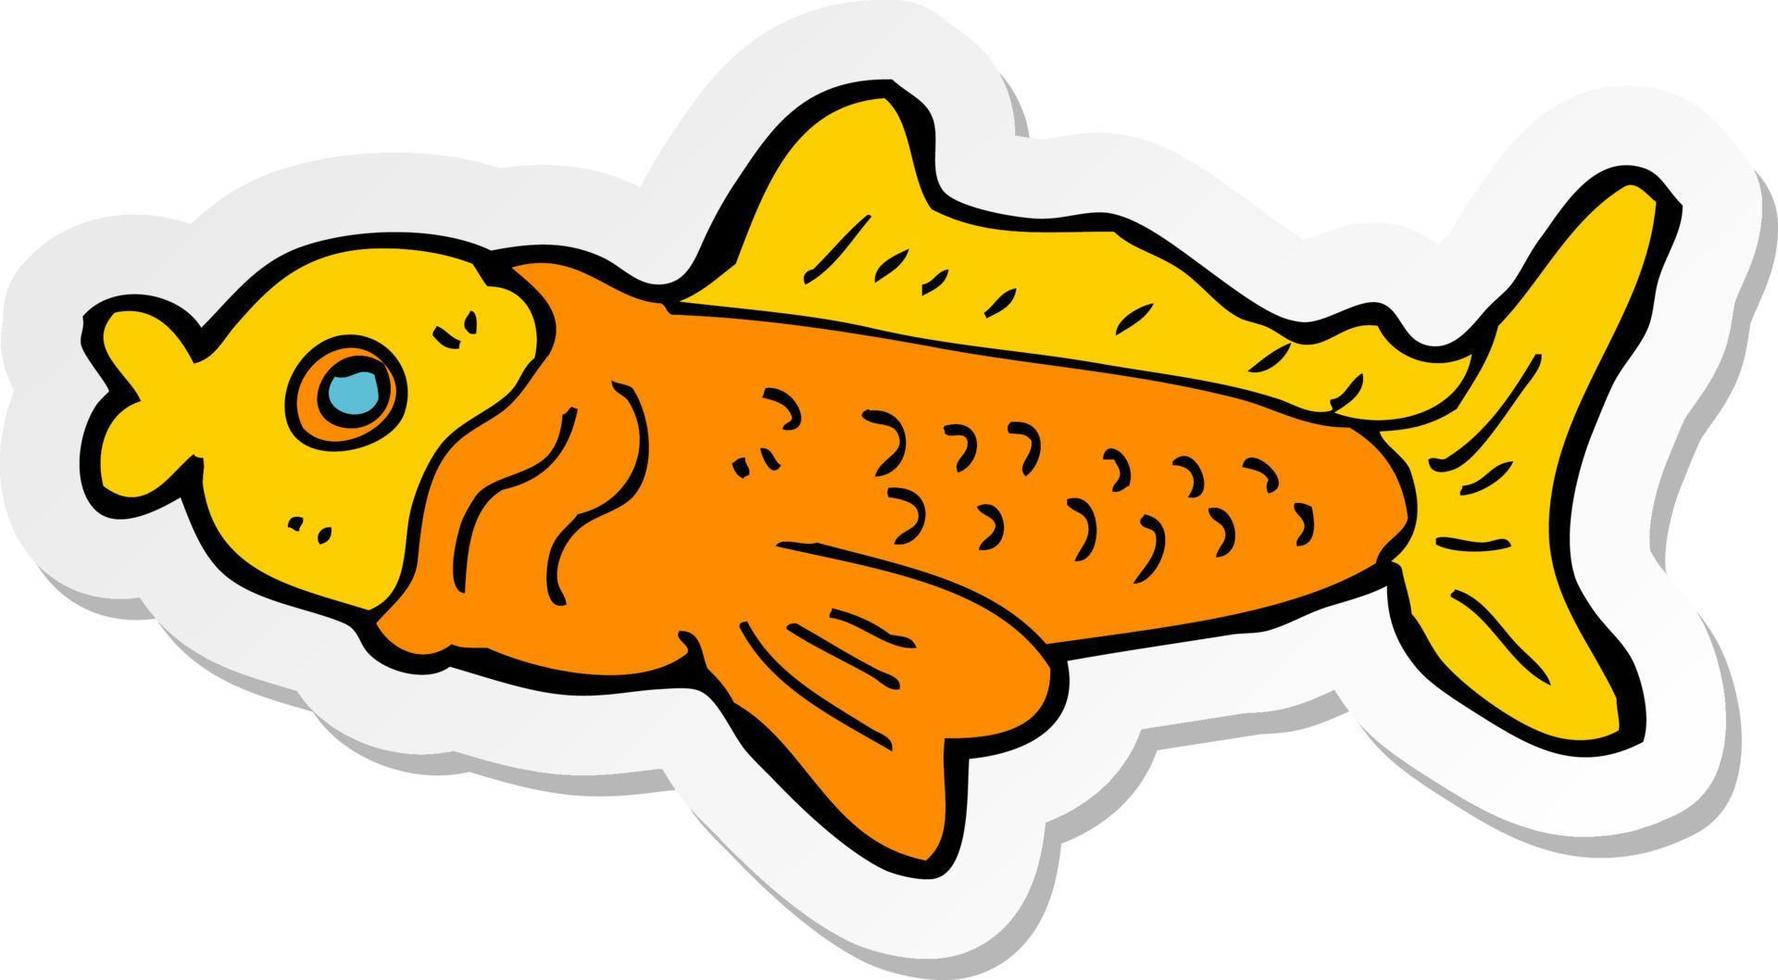 klistermärke av en tecknad rolig fisk vektor